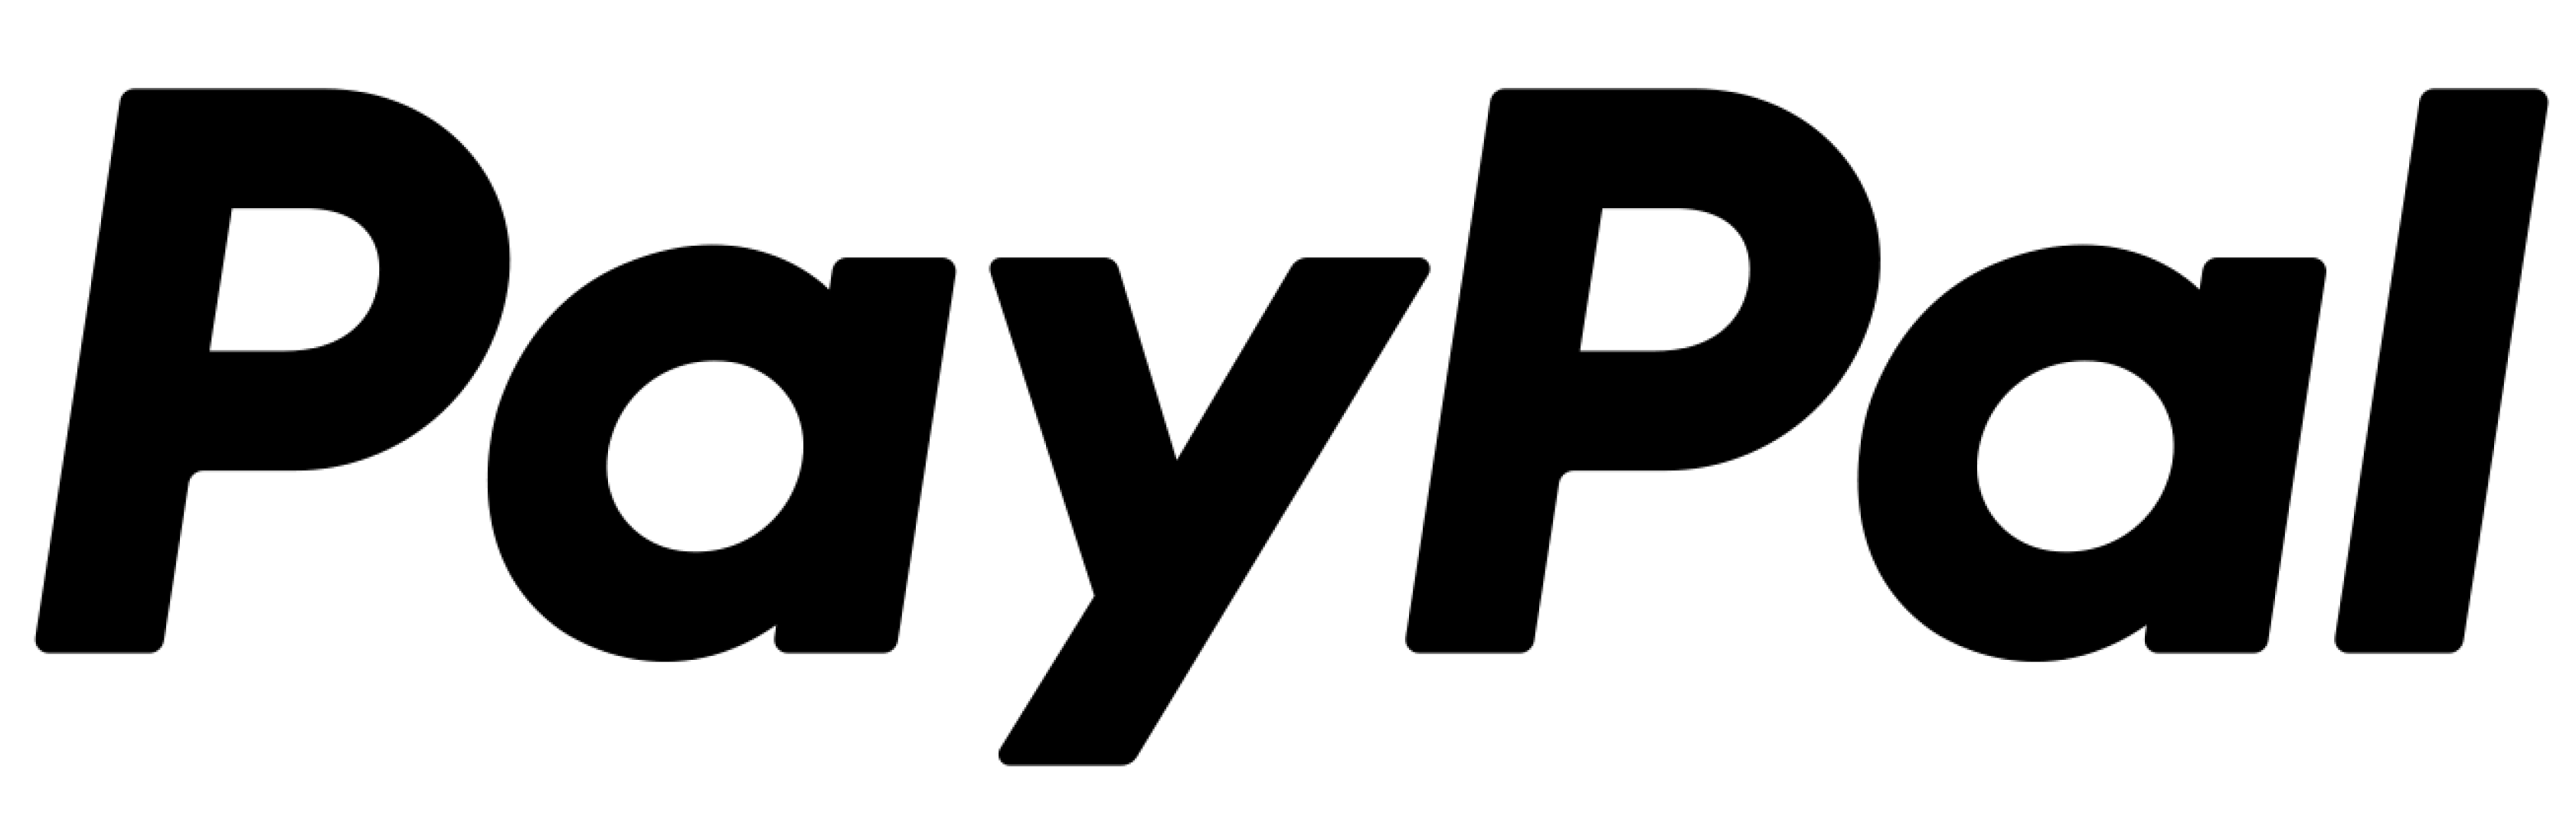 PayPal-logo Image